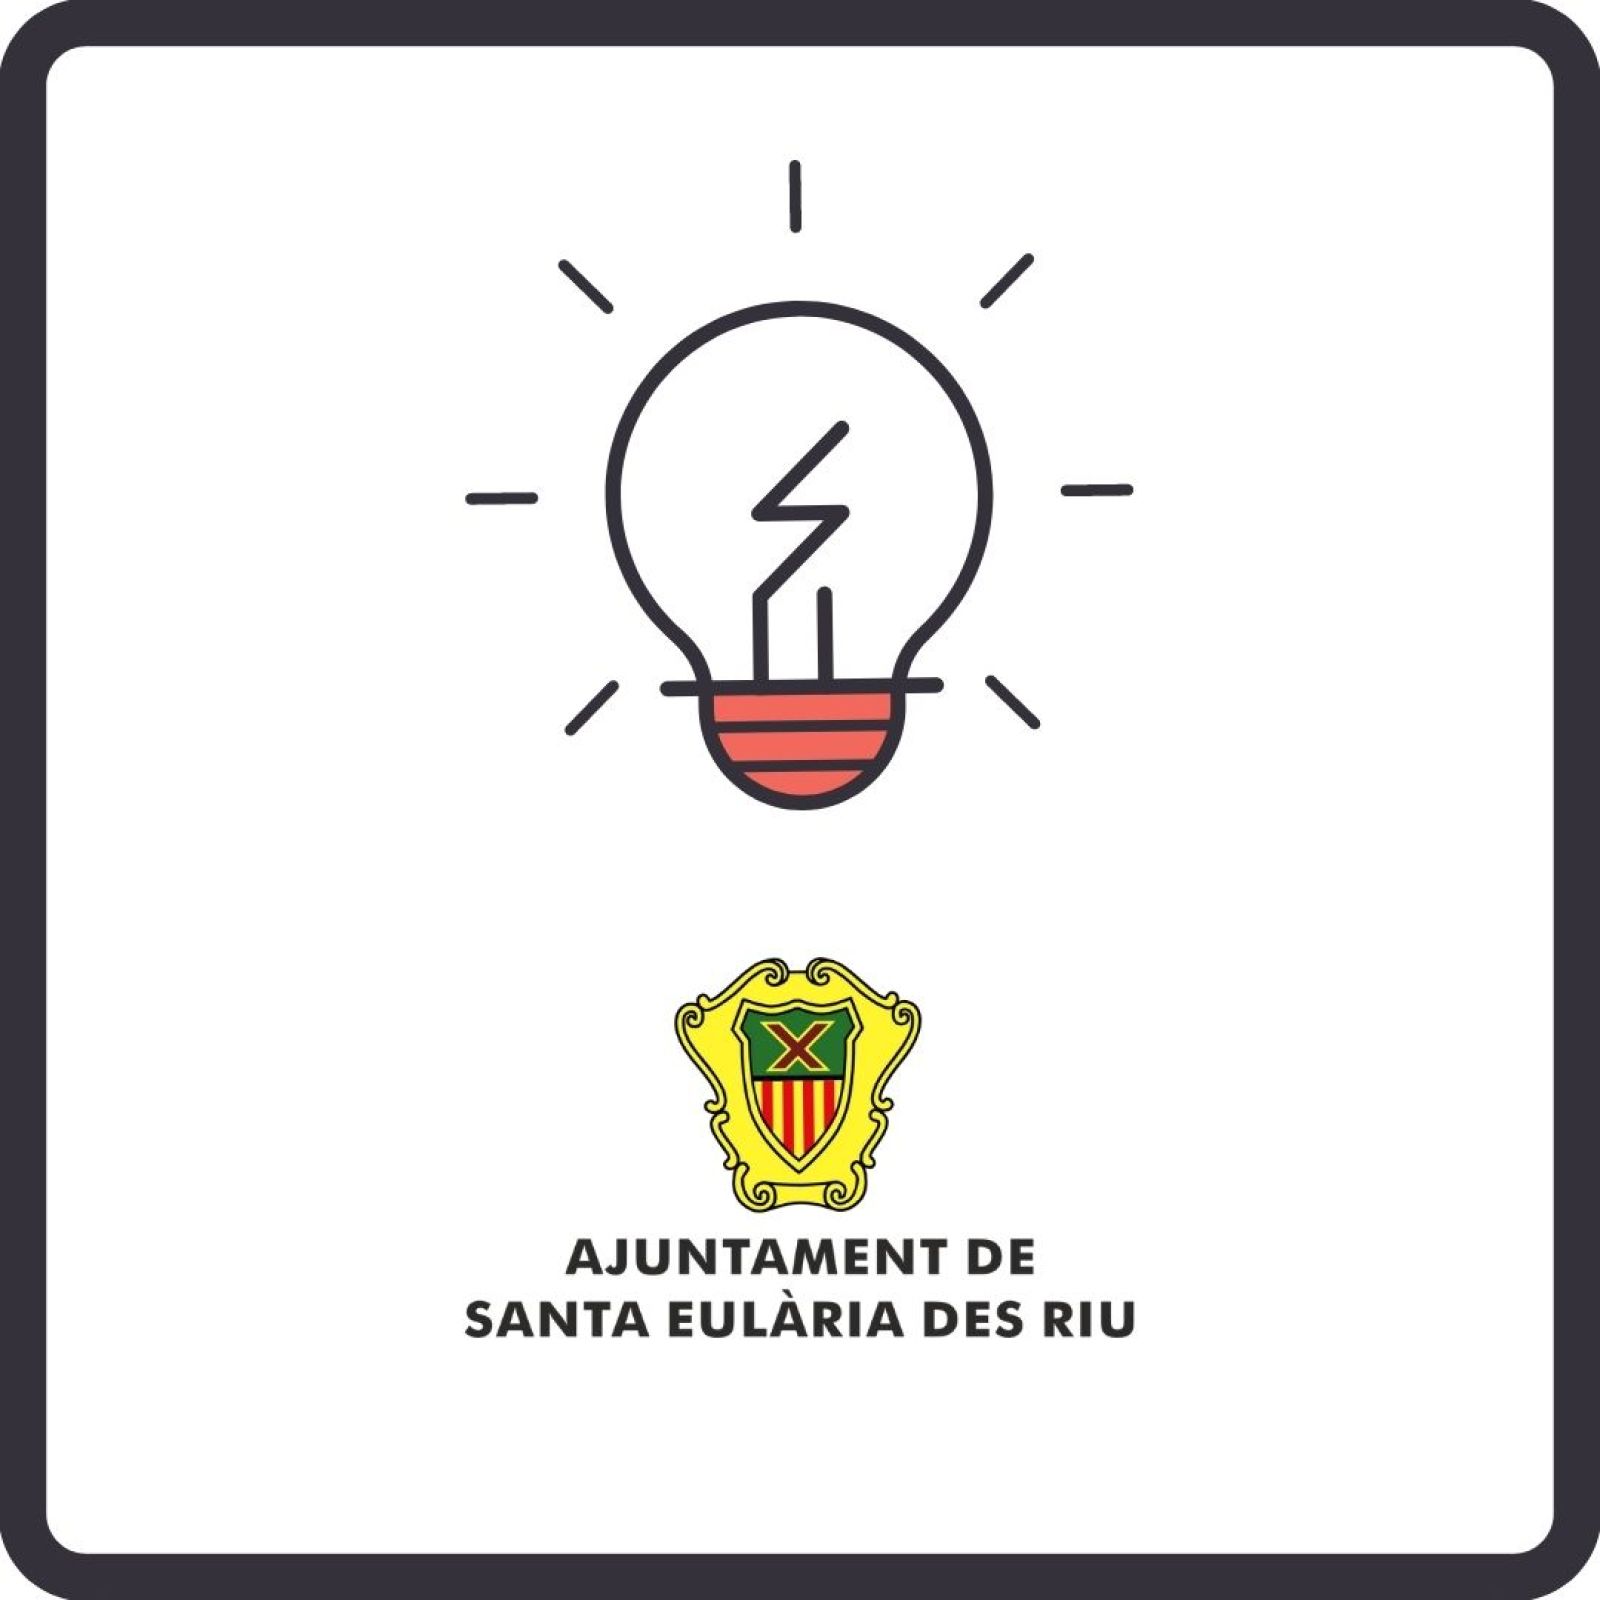 Corte temporal del suministro de energía eléctrica en diferentes zonas de Santa Eulària des Riu el día 30 de septiembre